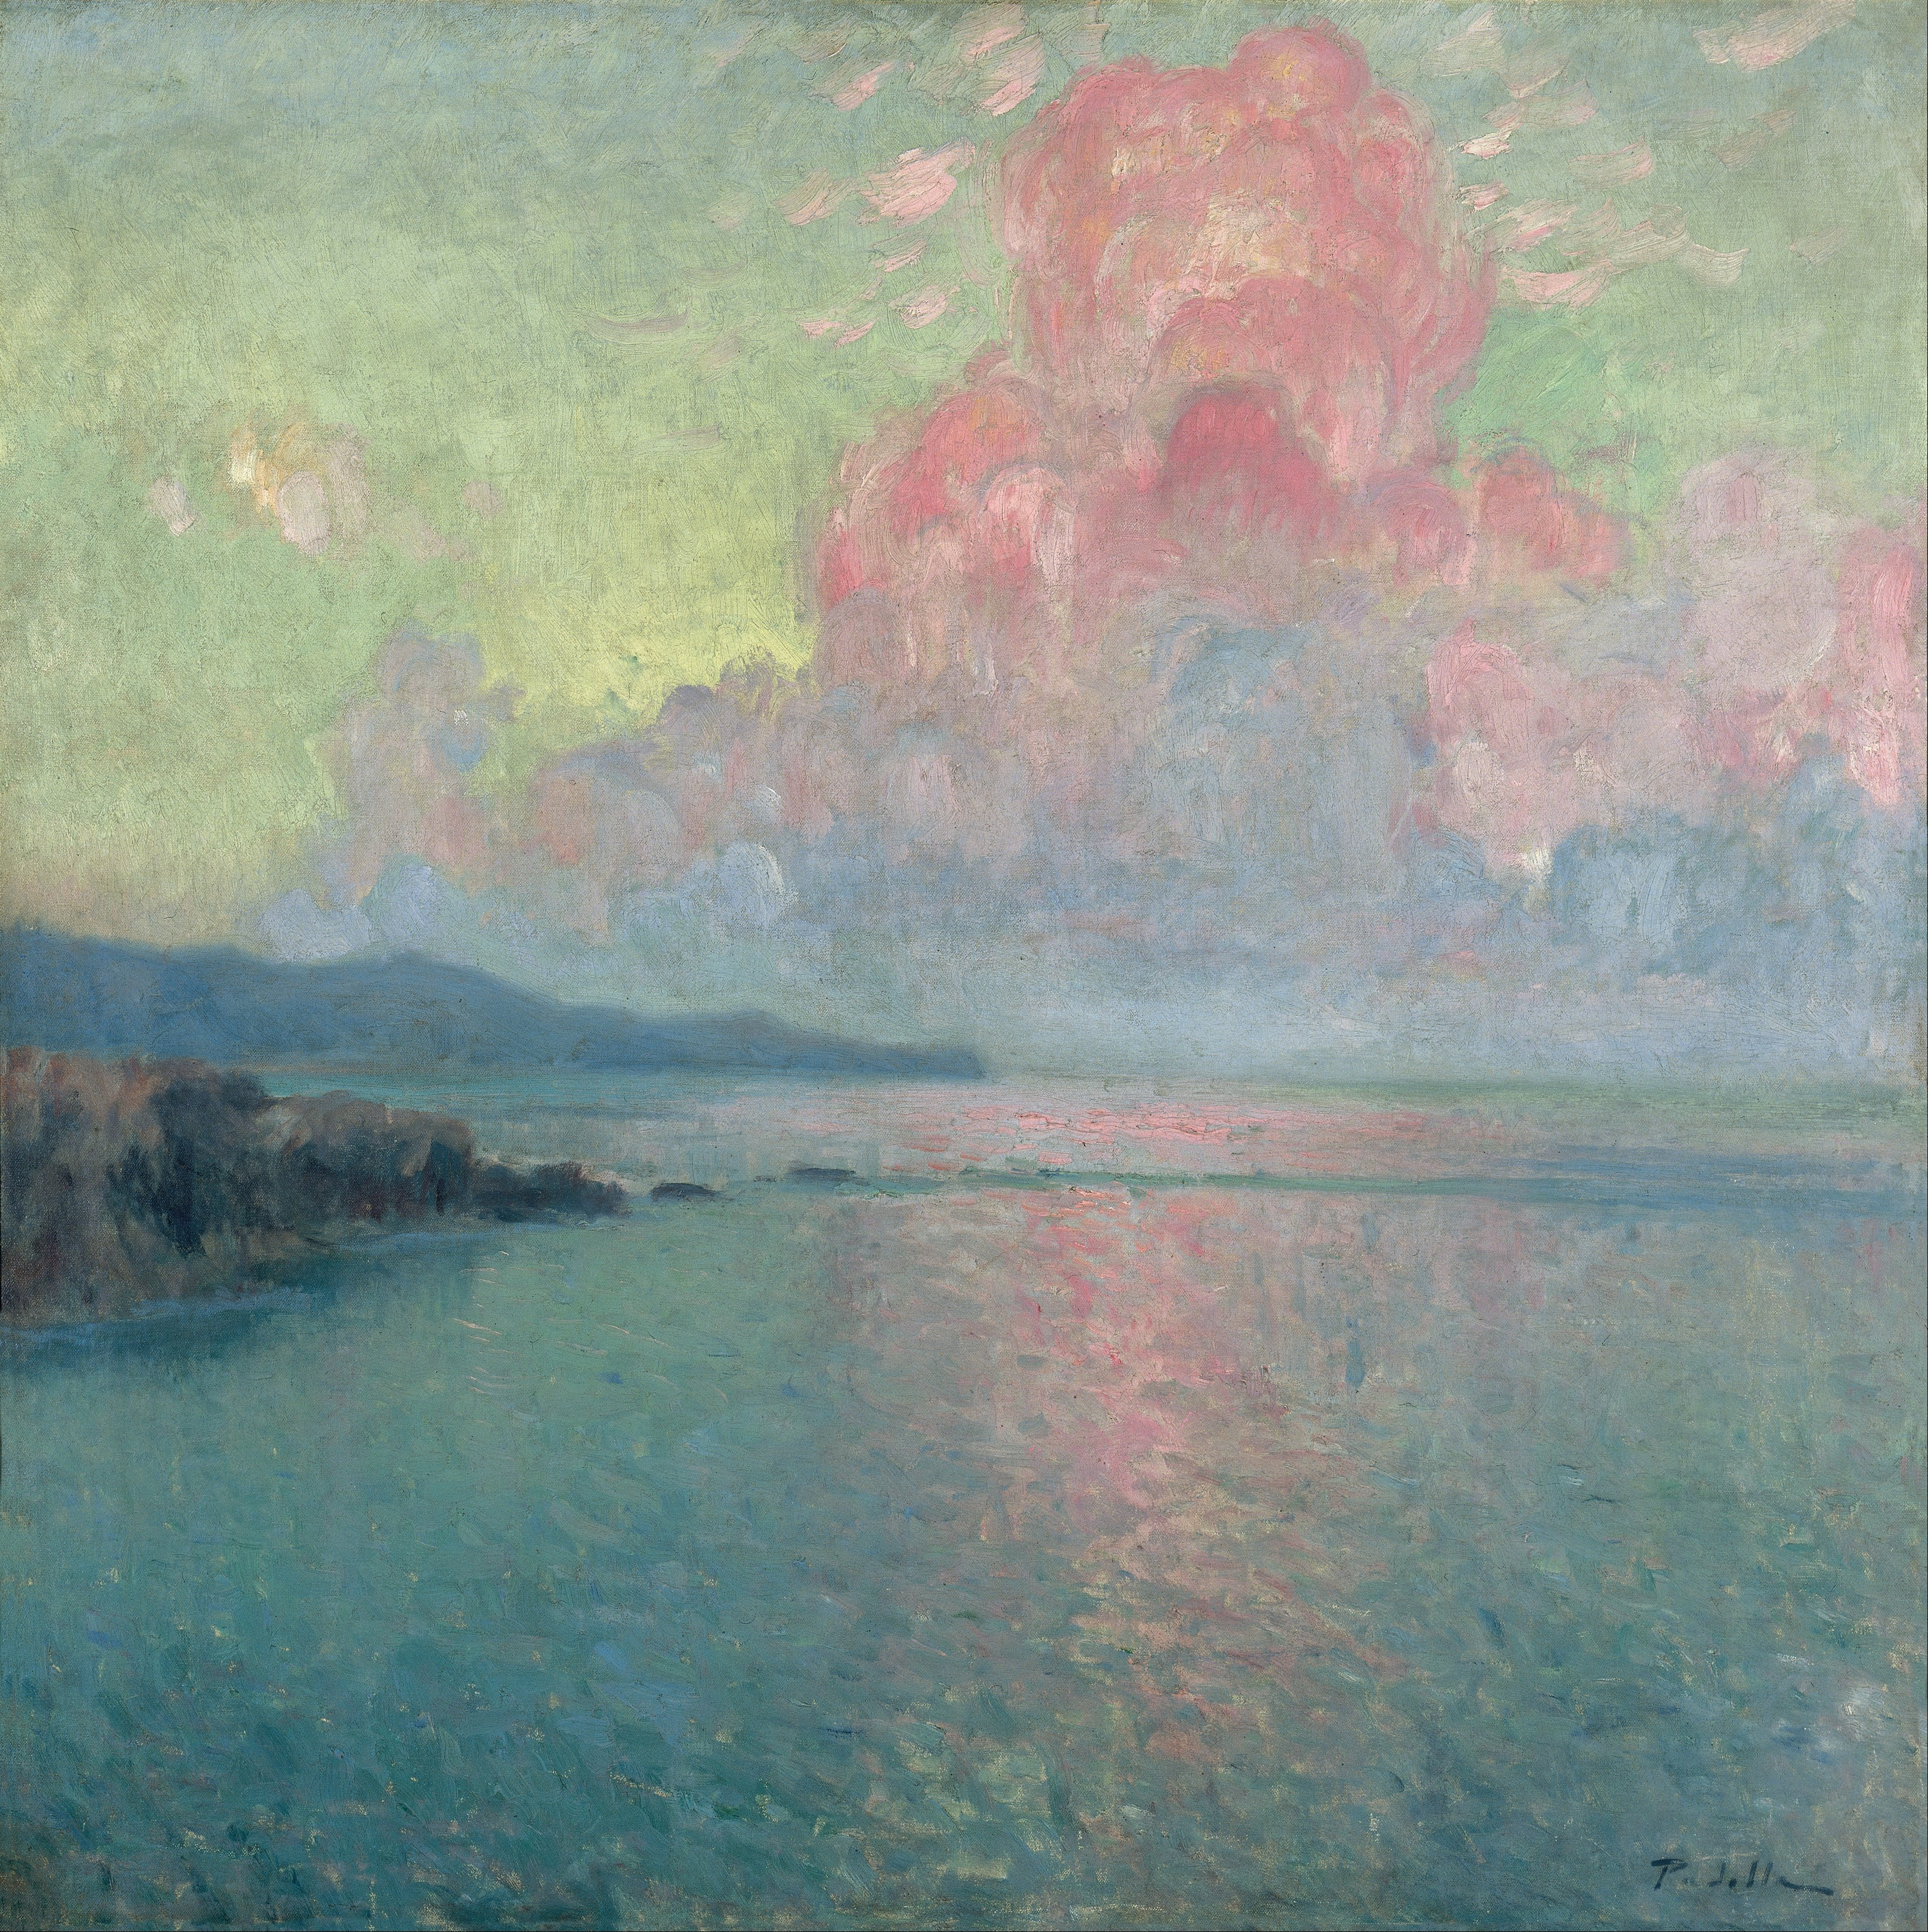 海と空 by Rafael Martínez Padilla - 1907年 - 100 x 100 cm 